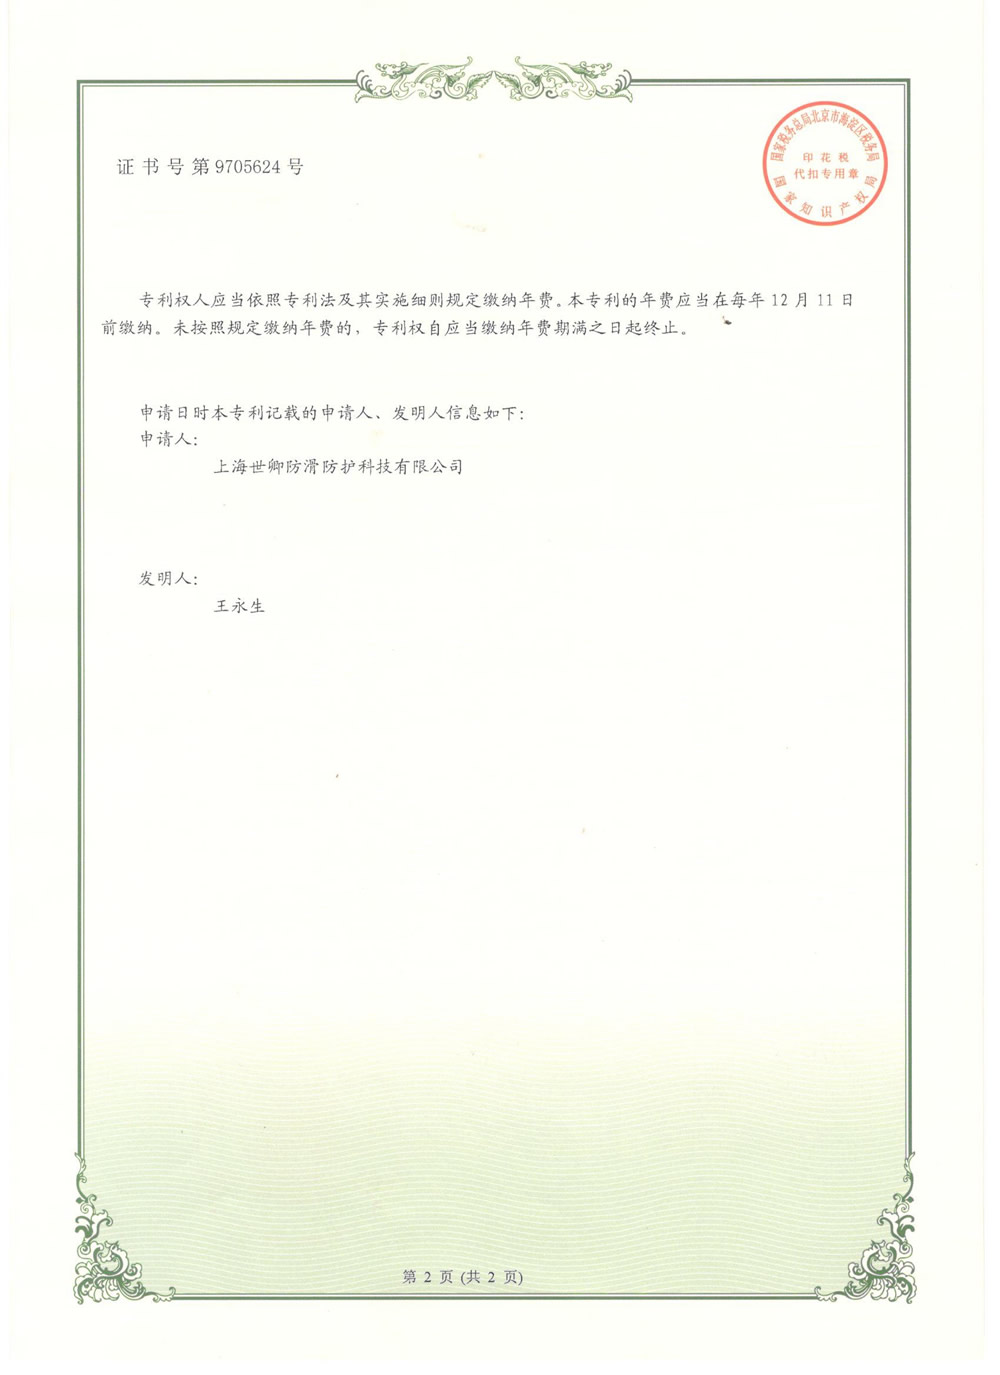 上海世卿防滑液發明專利審查合格證書